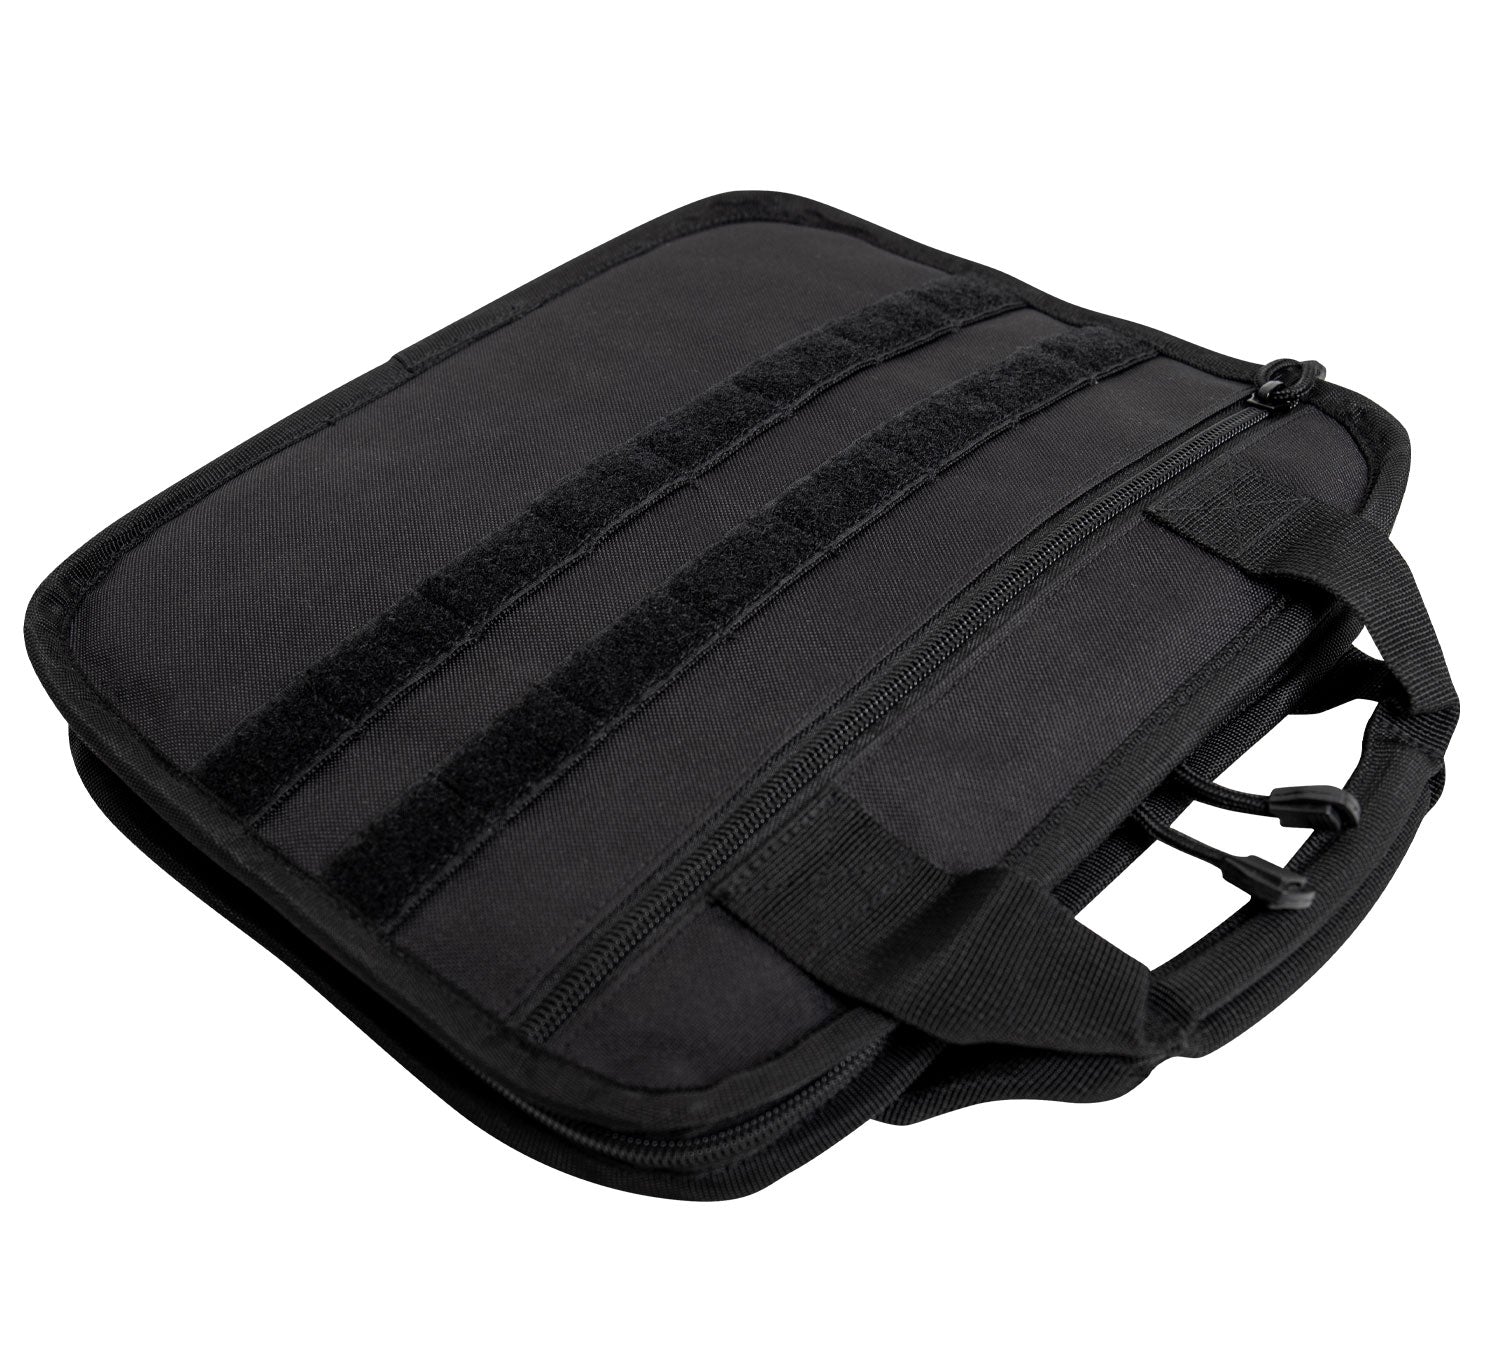 MilSpec Tactical Map Case Board Black Bags, Packs and Cases MilSpec Tactical Gear Supplier Tactical Distributors Australia